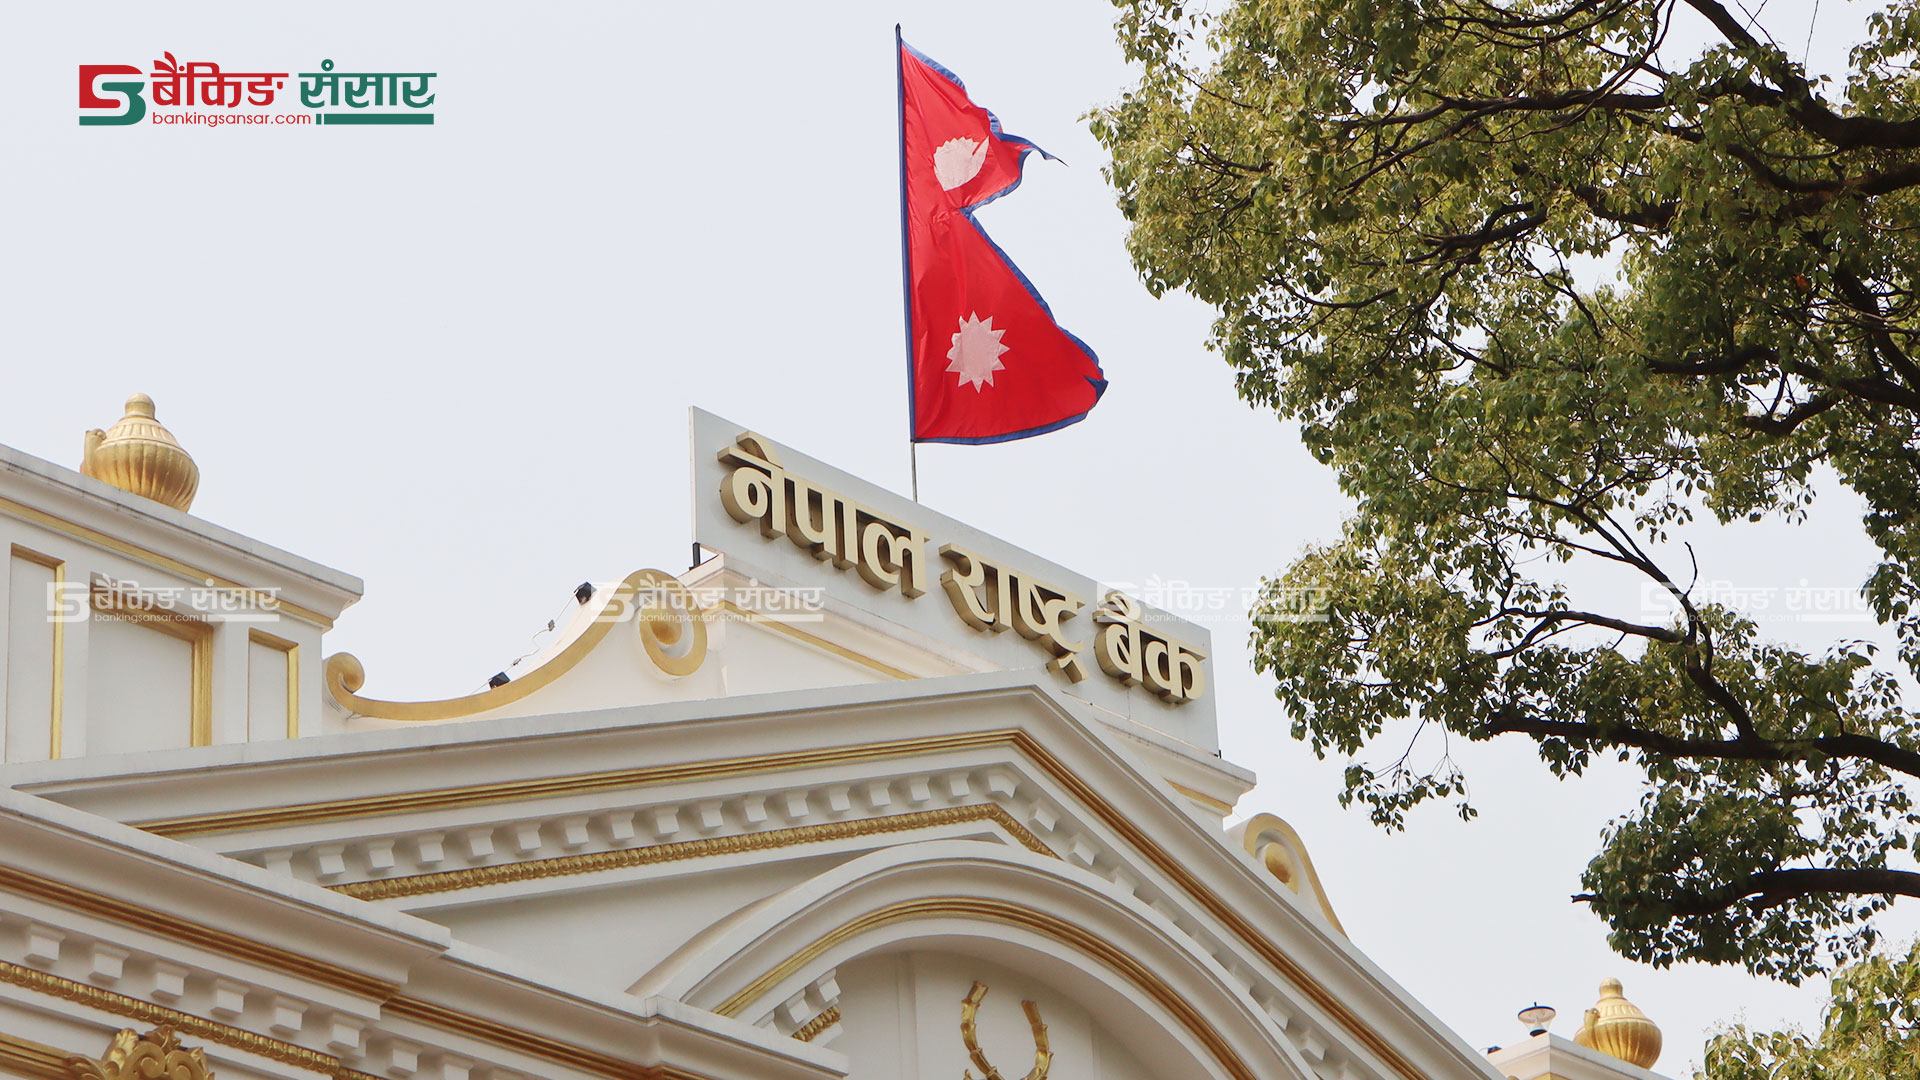 बैंकिङ प्रणालीबाट ३५ अर्ब रुपैयाँ तान्दै नेपाल राष्ट्र बैंक